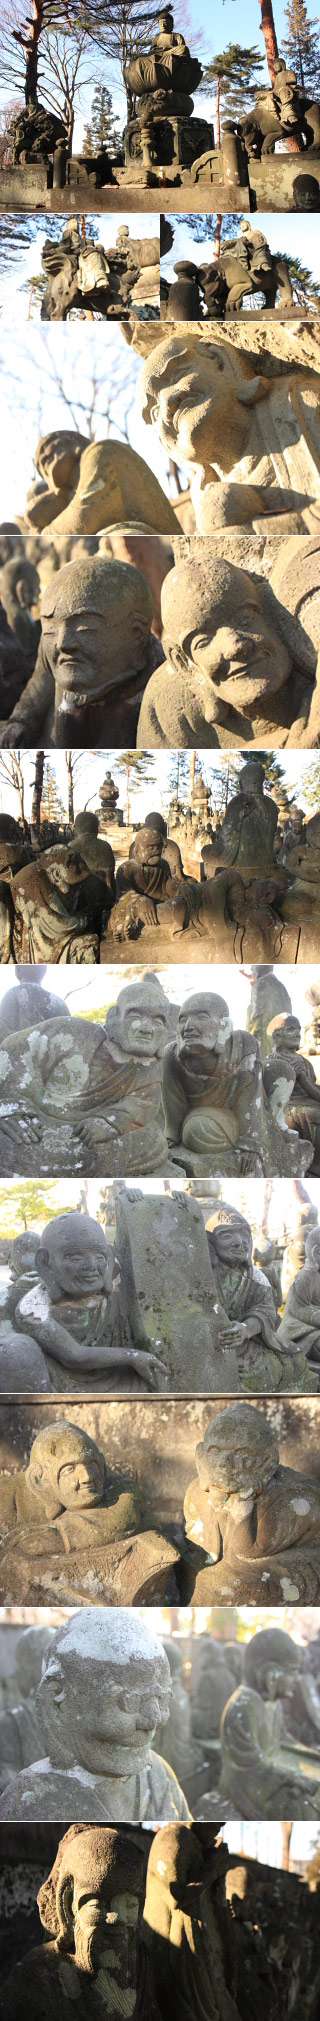 500 Rakan Statues of Kitain